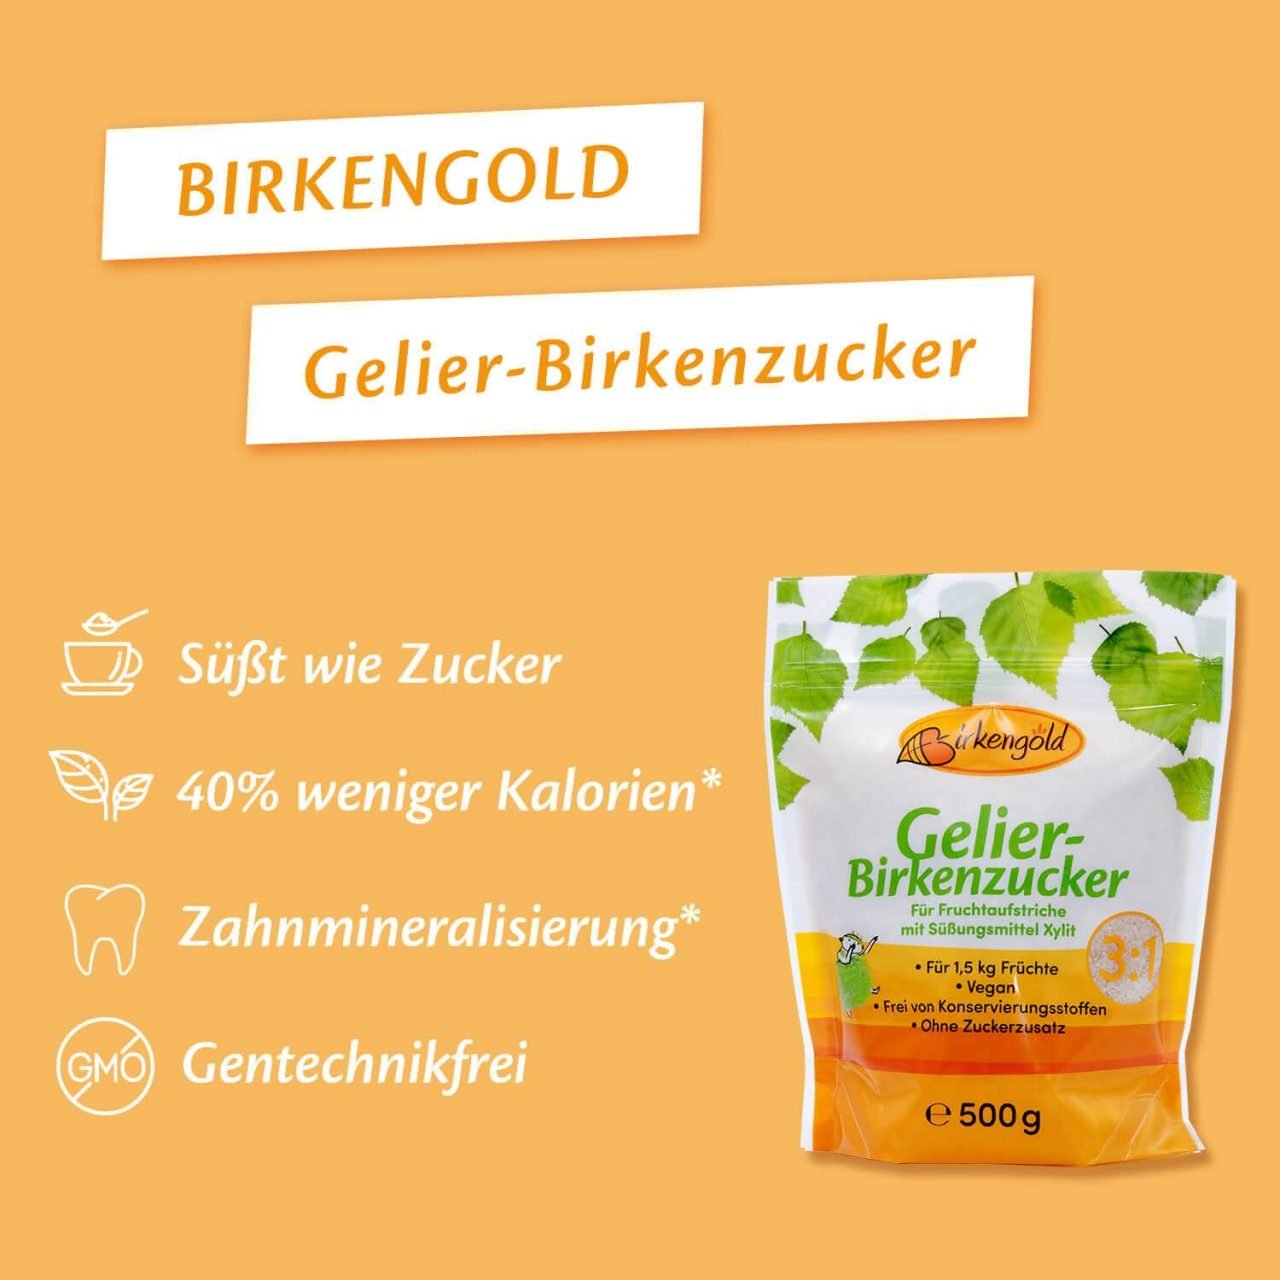 zuckerfreier-birkengold-gelier-xylit-birkenzucker-3-1 Beschreibung